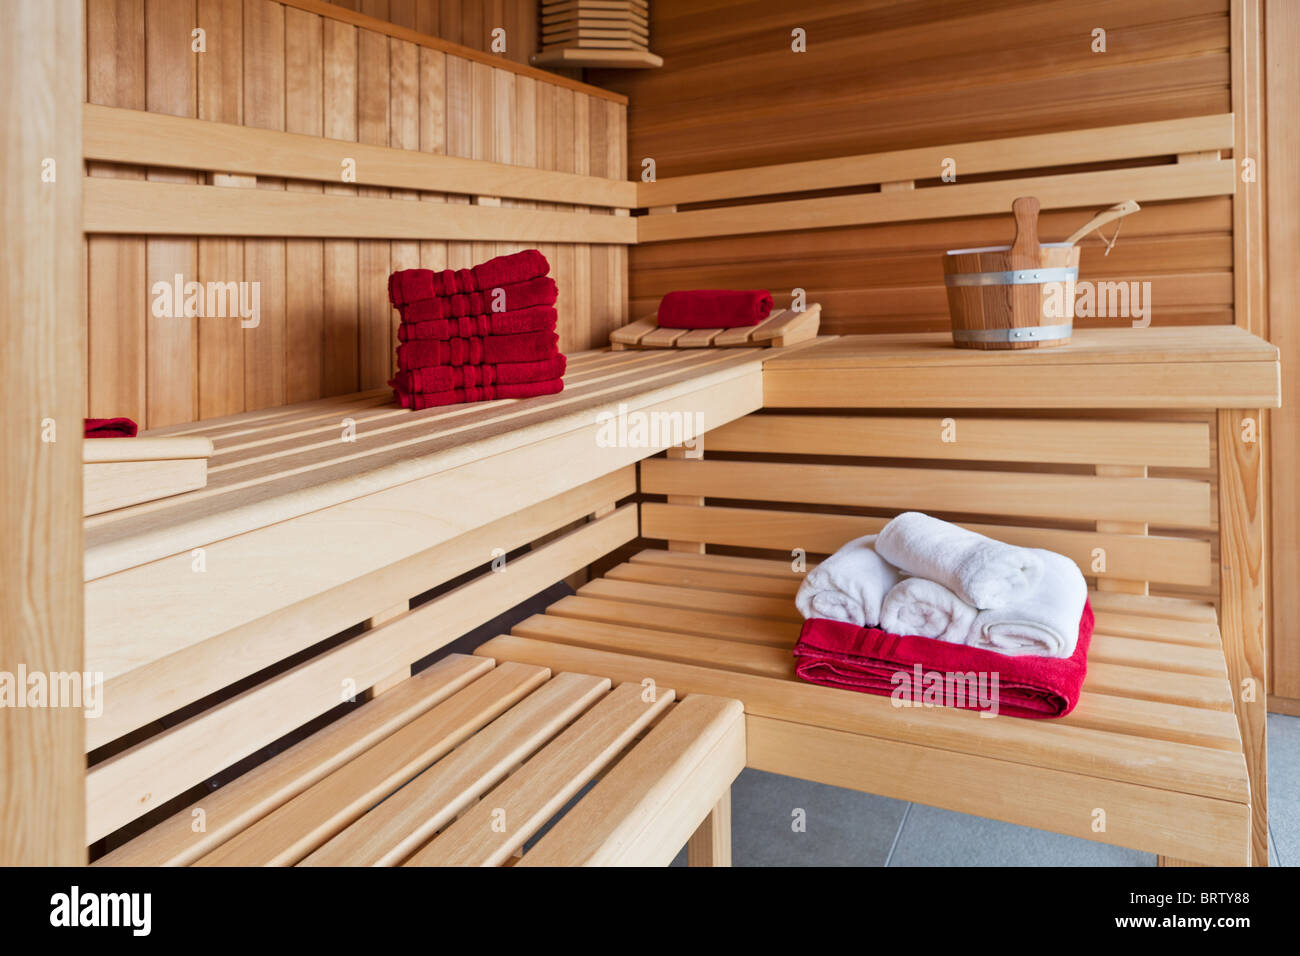 Interior de una sauna de madera Foto de stock